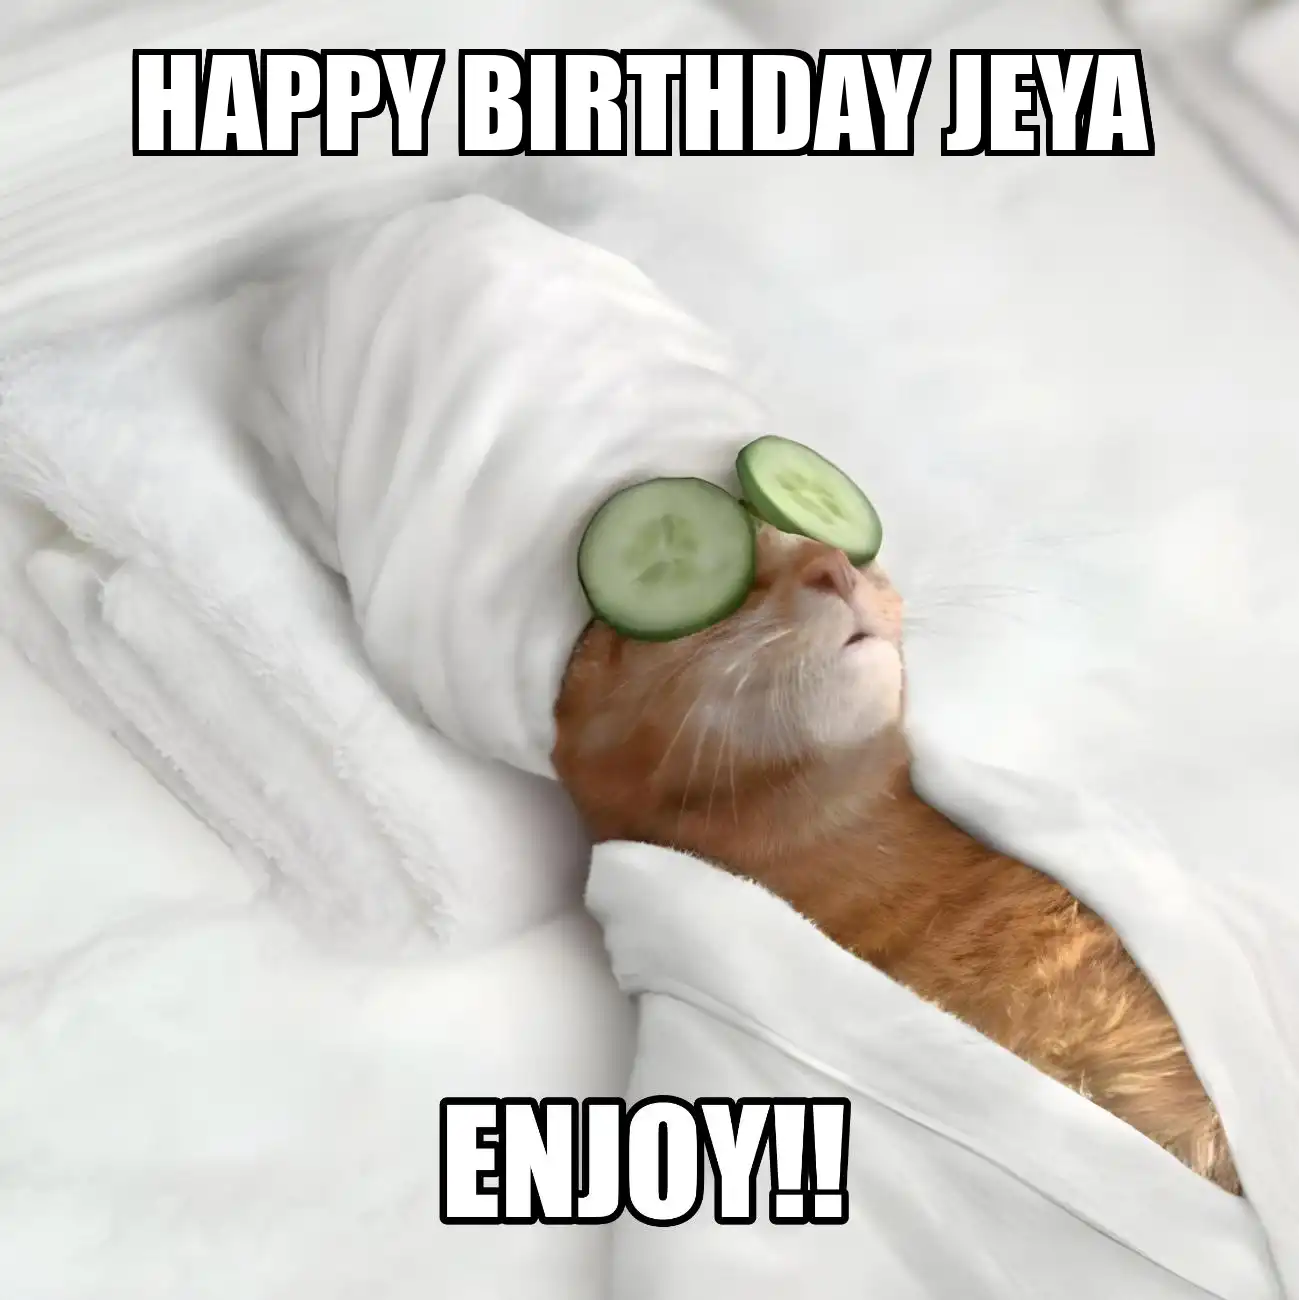 Happy Birthday Jeya Enjoy Cat Meme